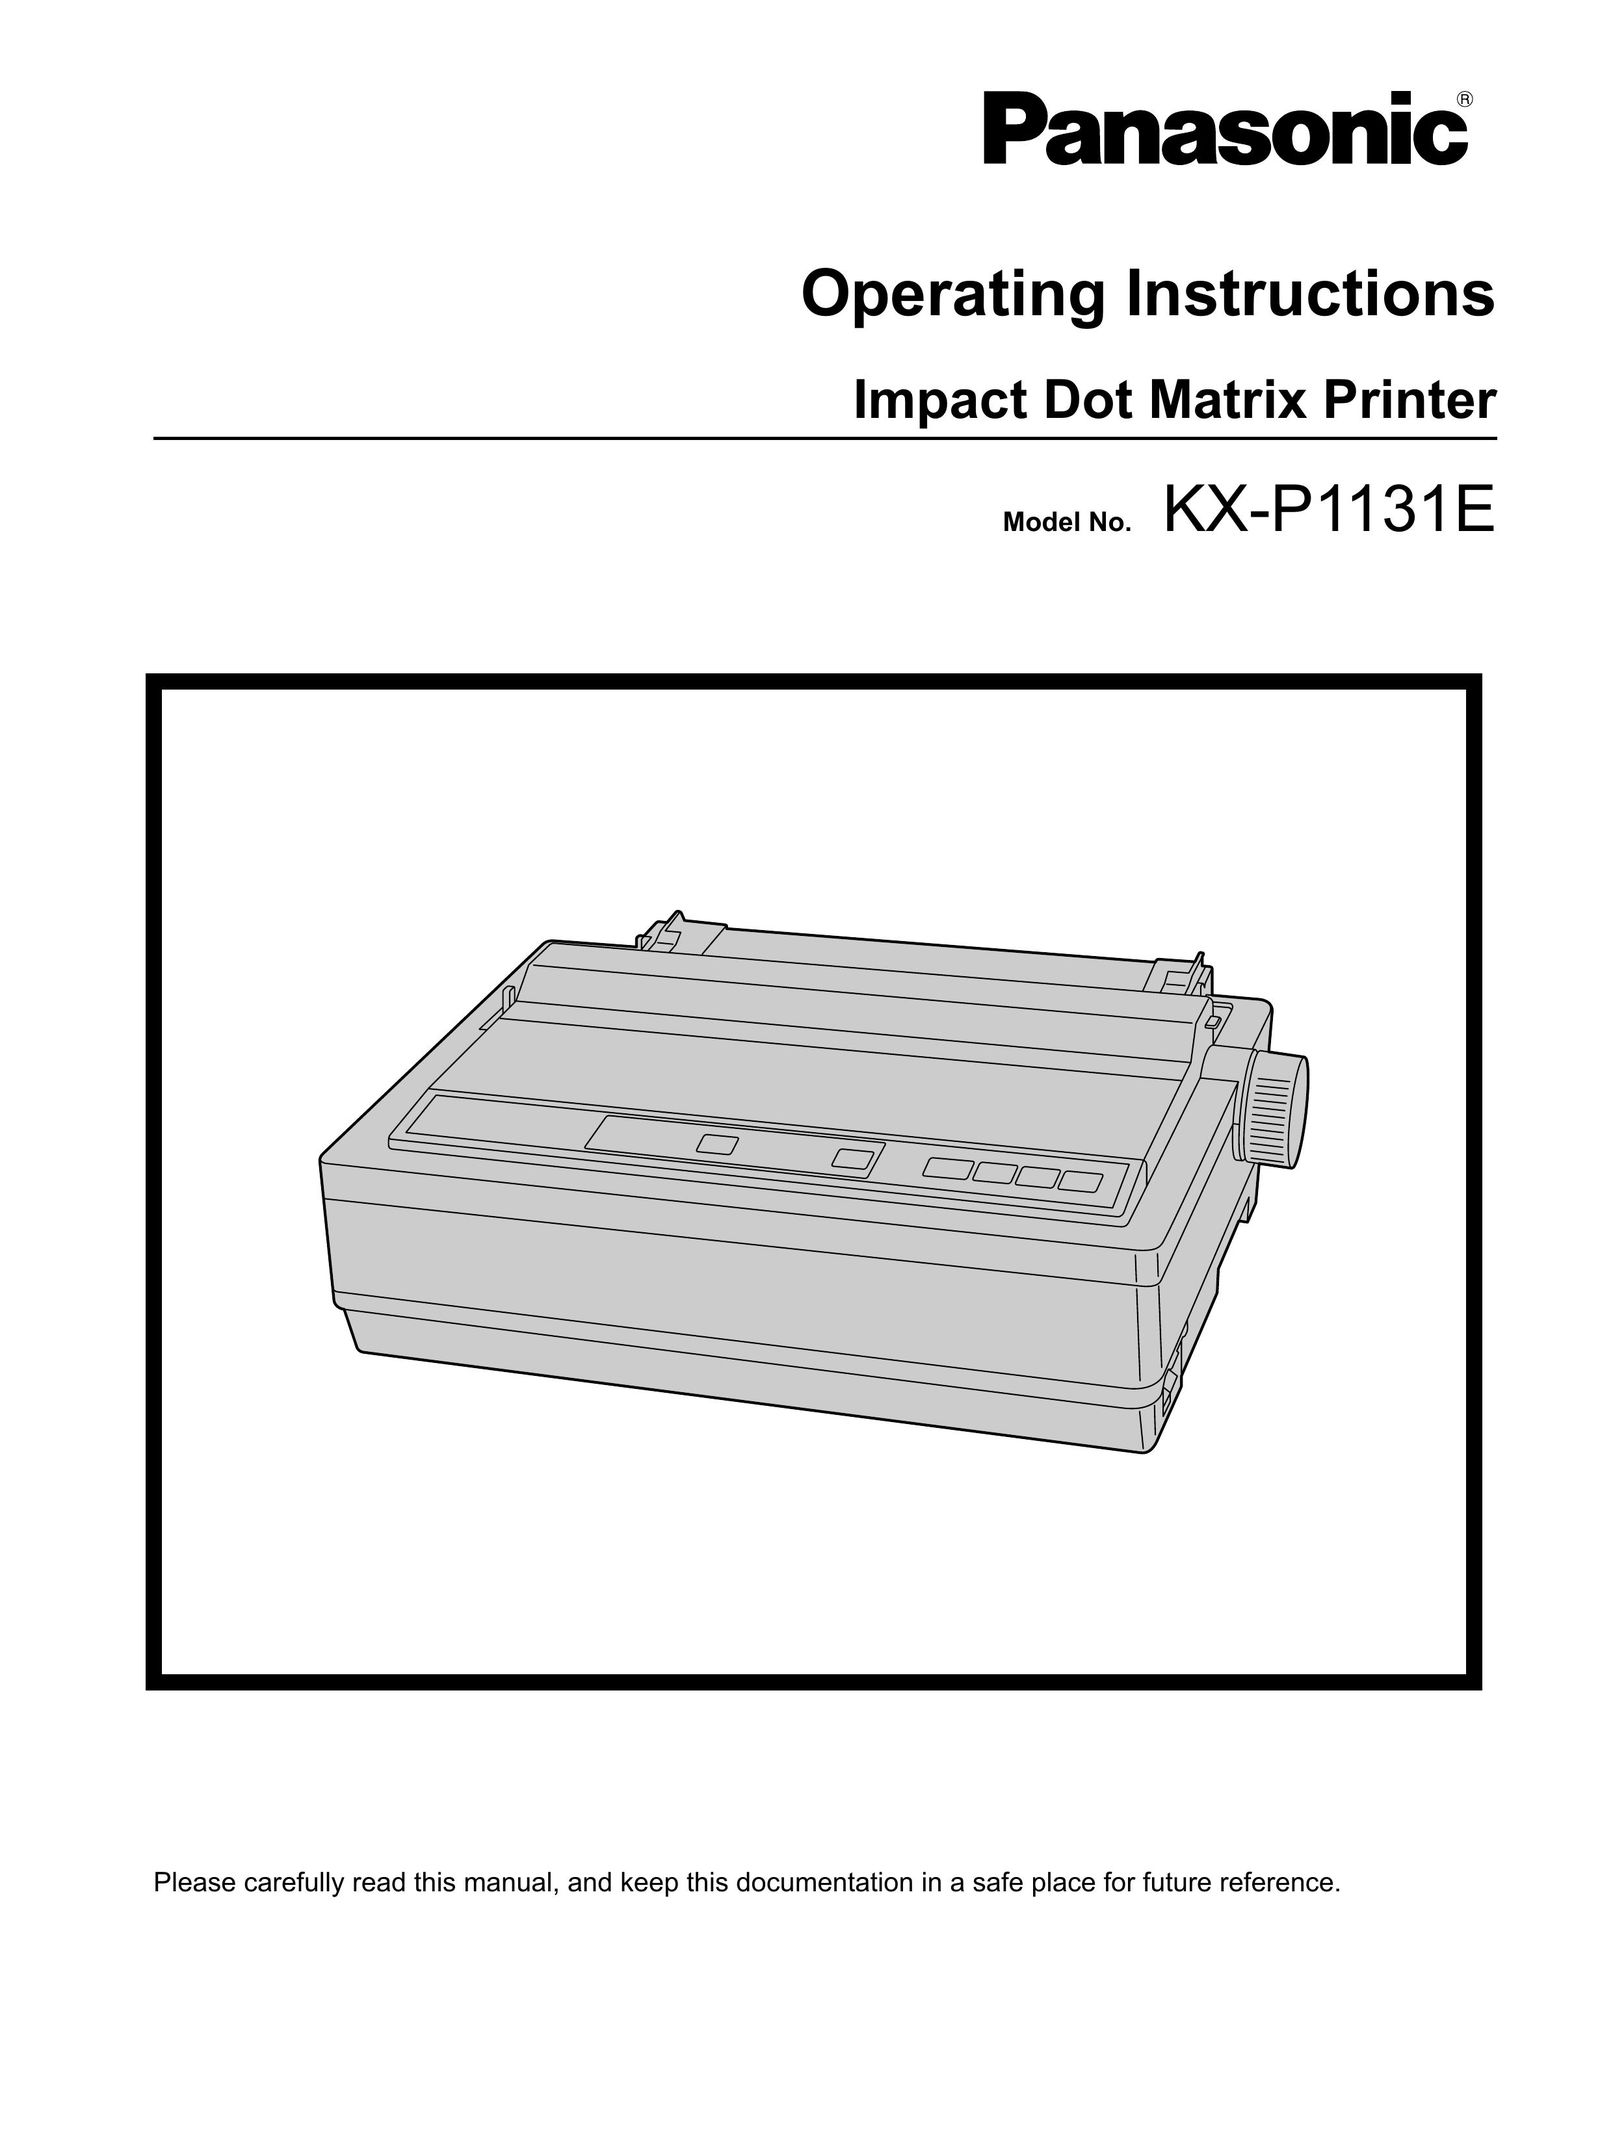 Panasonic KX-P1131E Printer User Manual